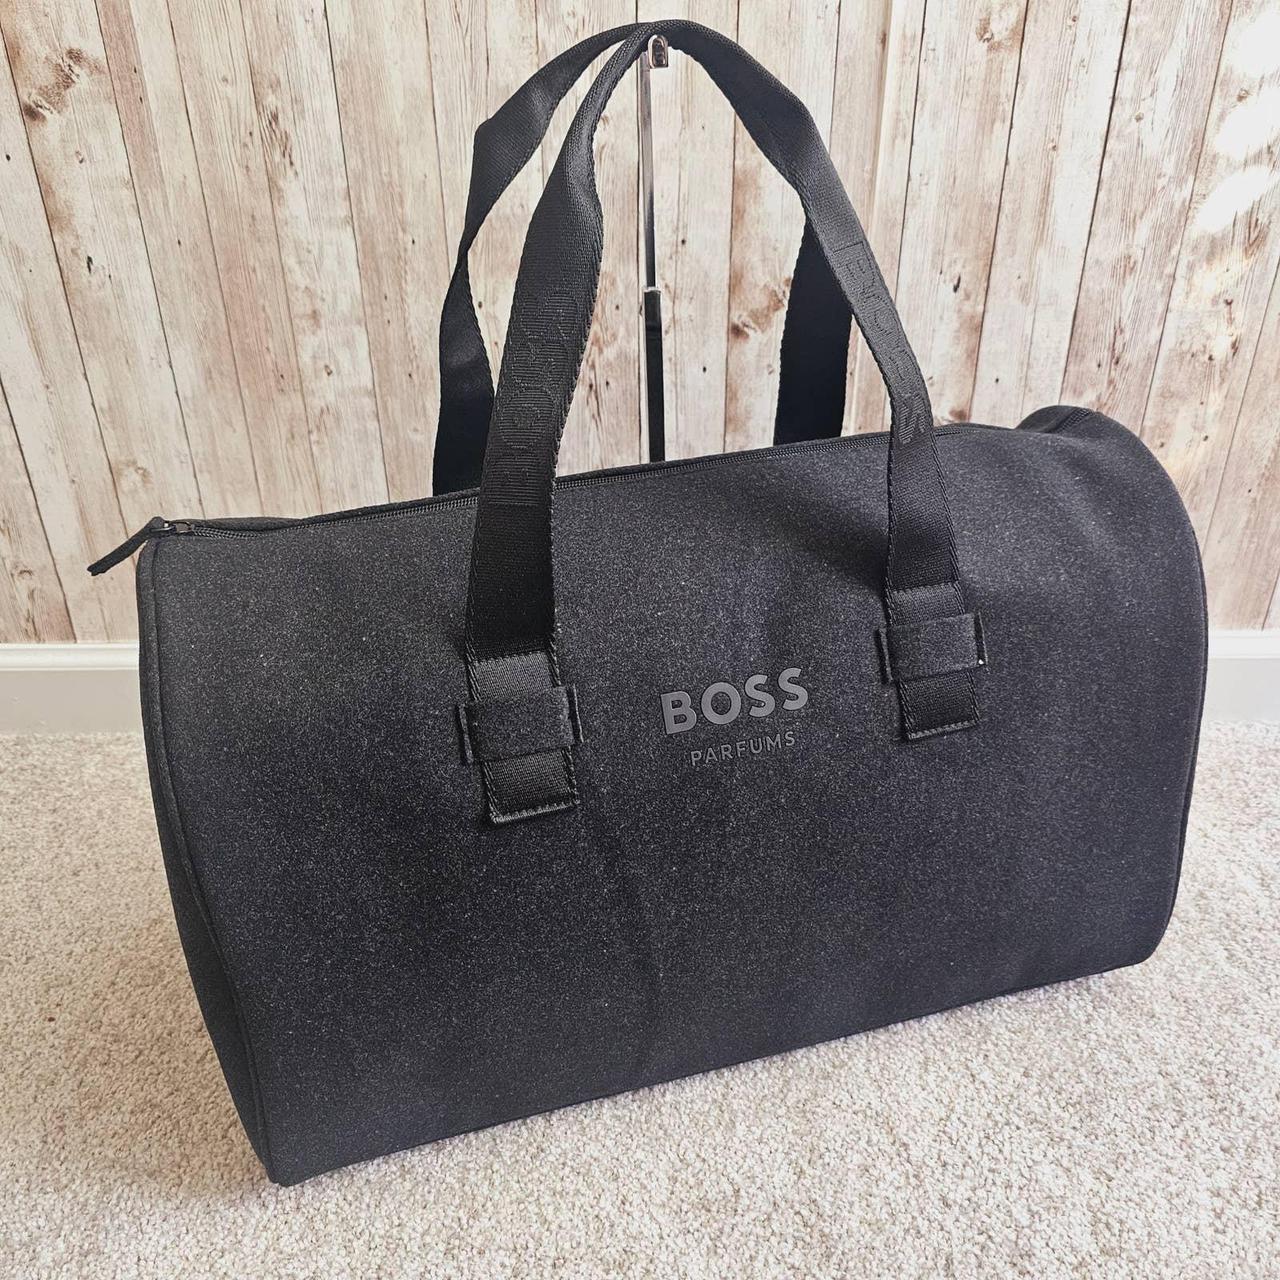 Hugo Boss travel bag Brand new. , , ,, , - Depop